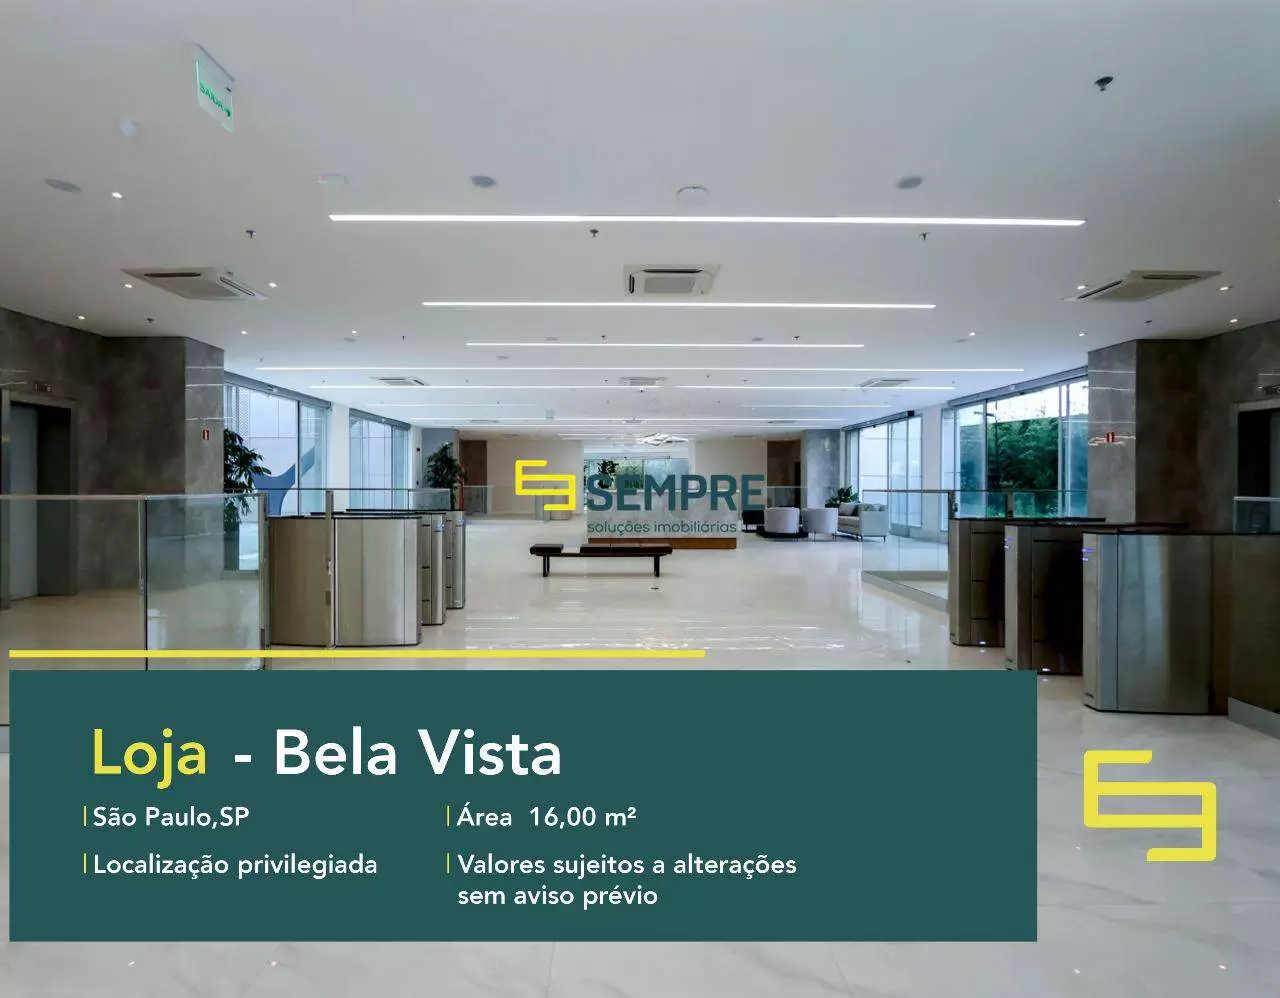 Loja para locação no Bela Vista em São Paulo - Martiniano Center, excelente localização. O estabelecimento comercial conta com área de 16 m².